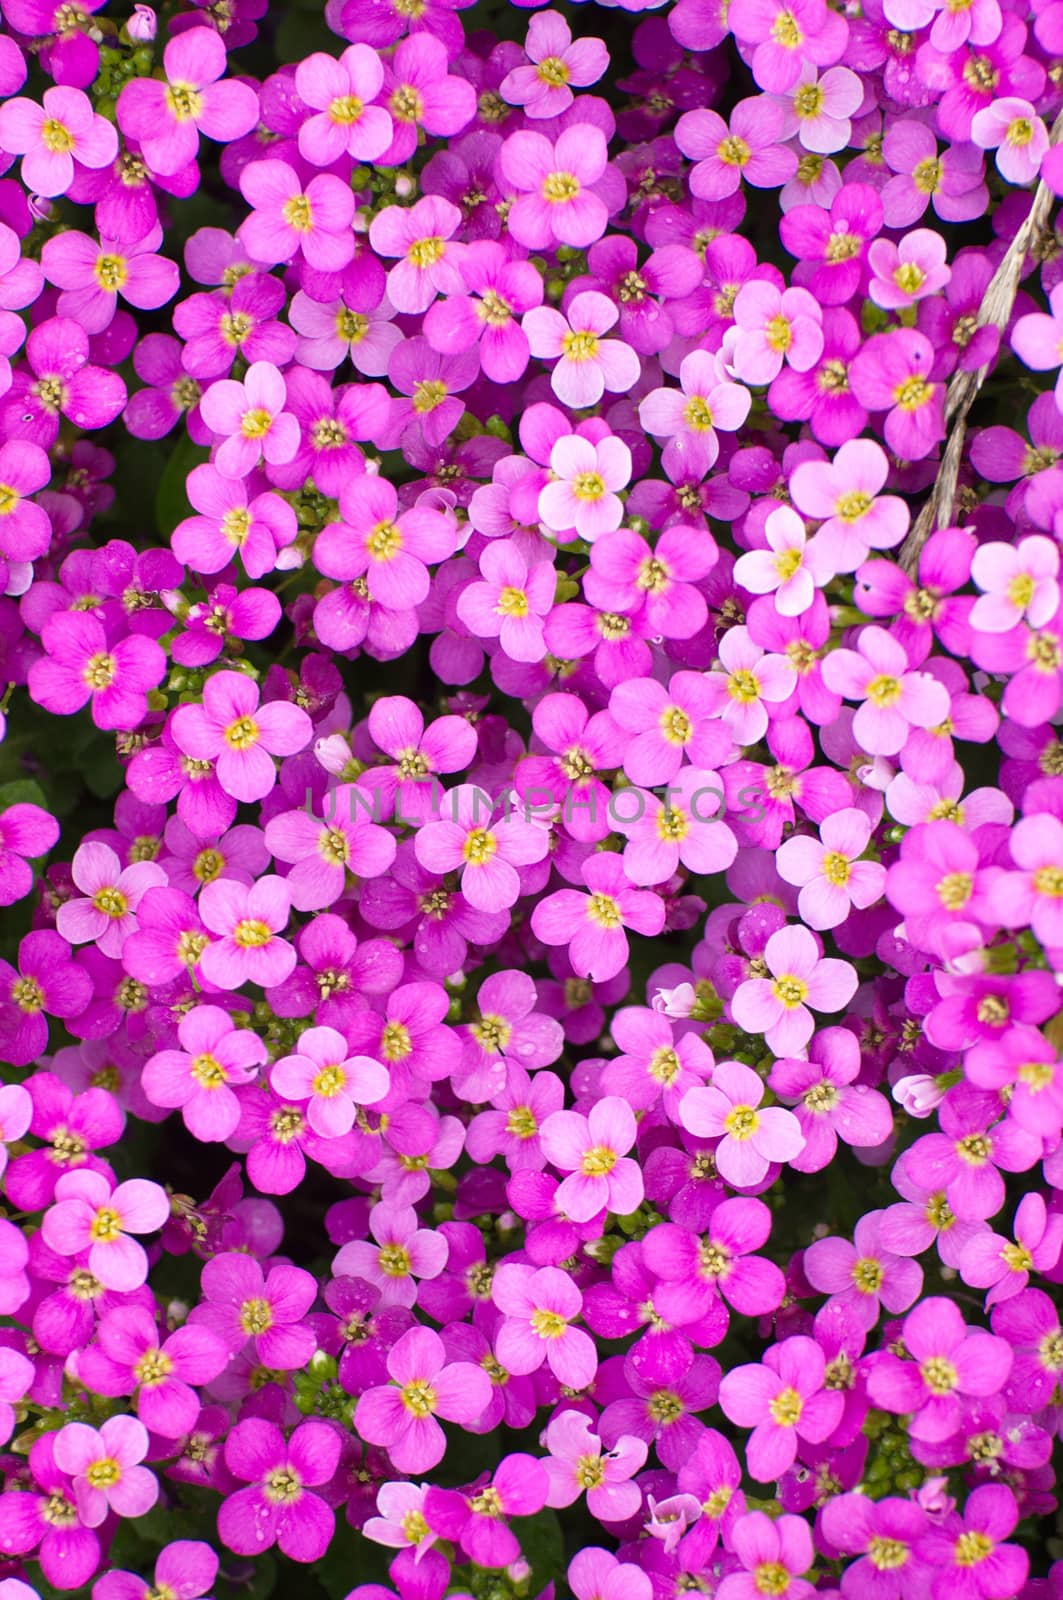 Spring violete beautiful flowers in Fulda, Hessen, Germany by Eagle2308